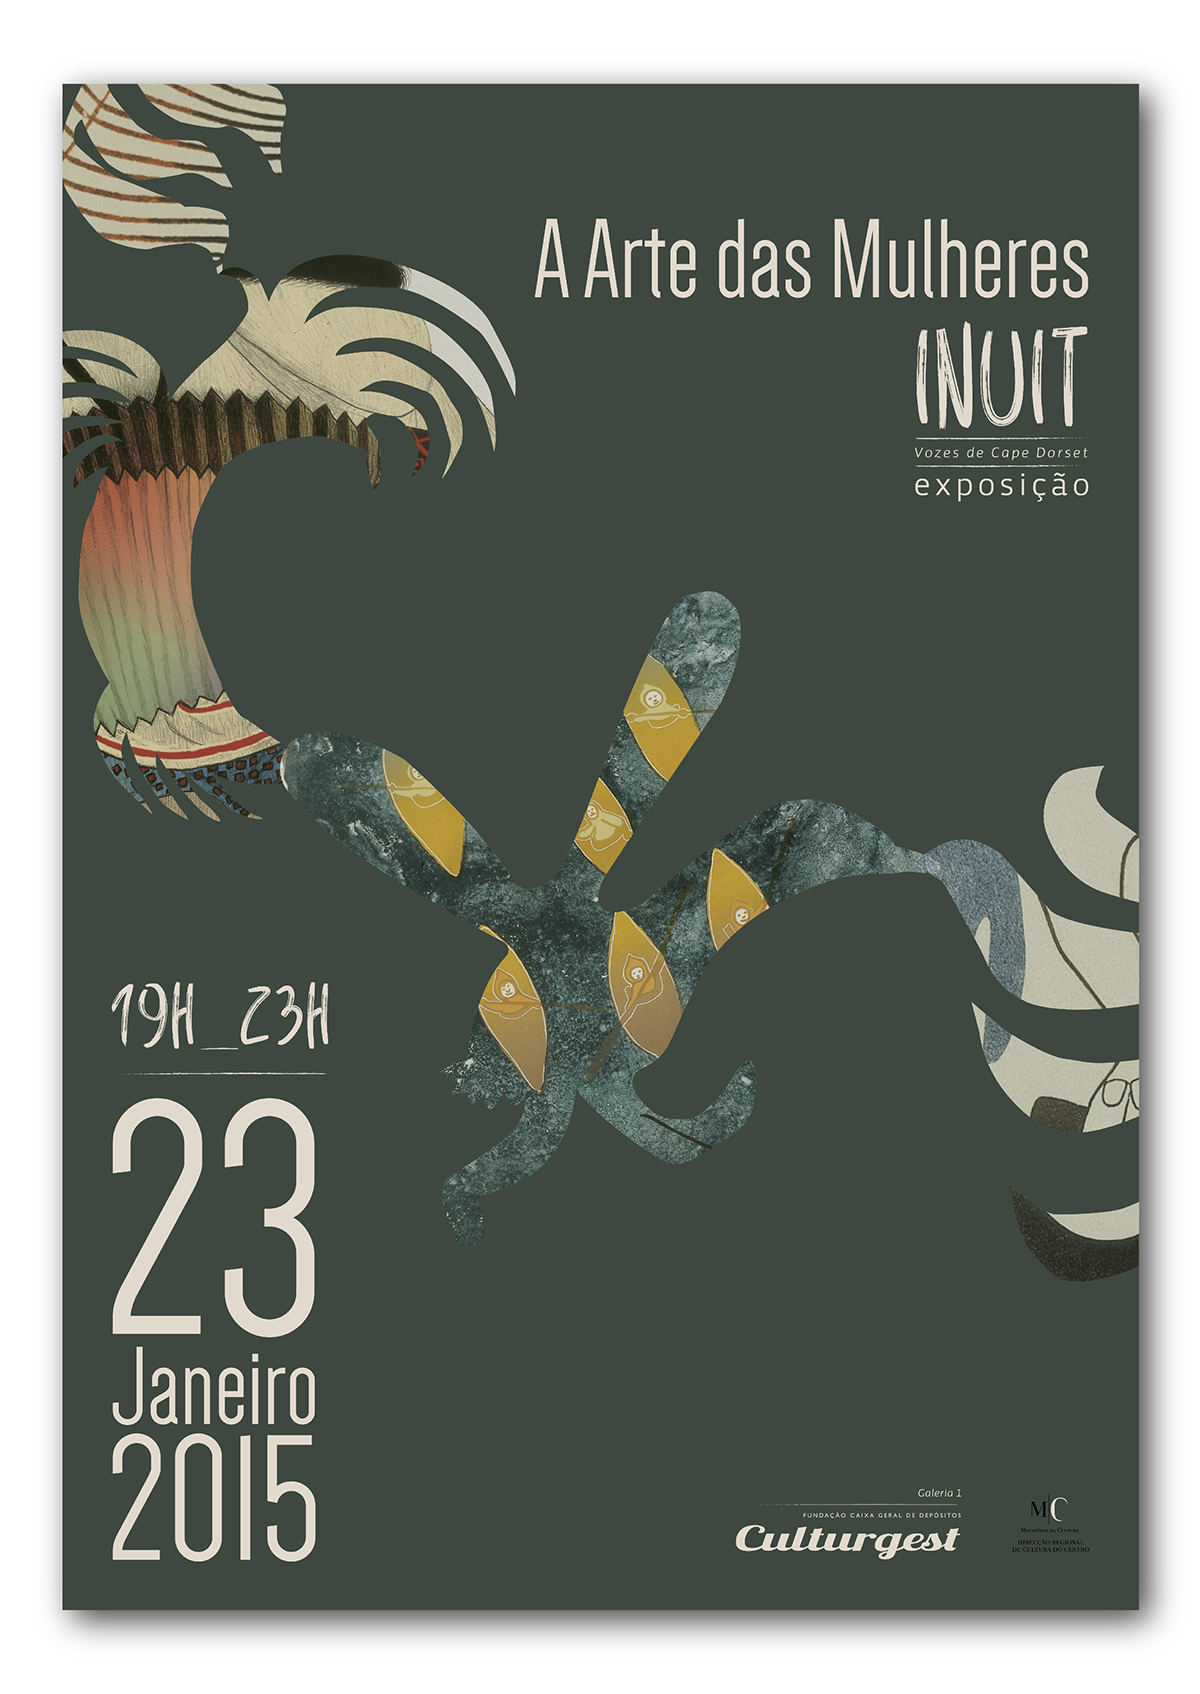 design art paint culture Inuit poster cartaz Exposição Exhibition  cape dorset